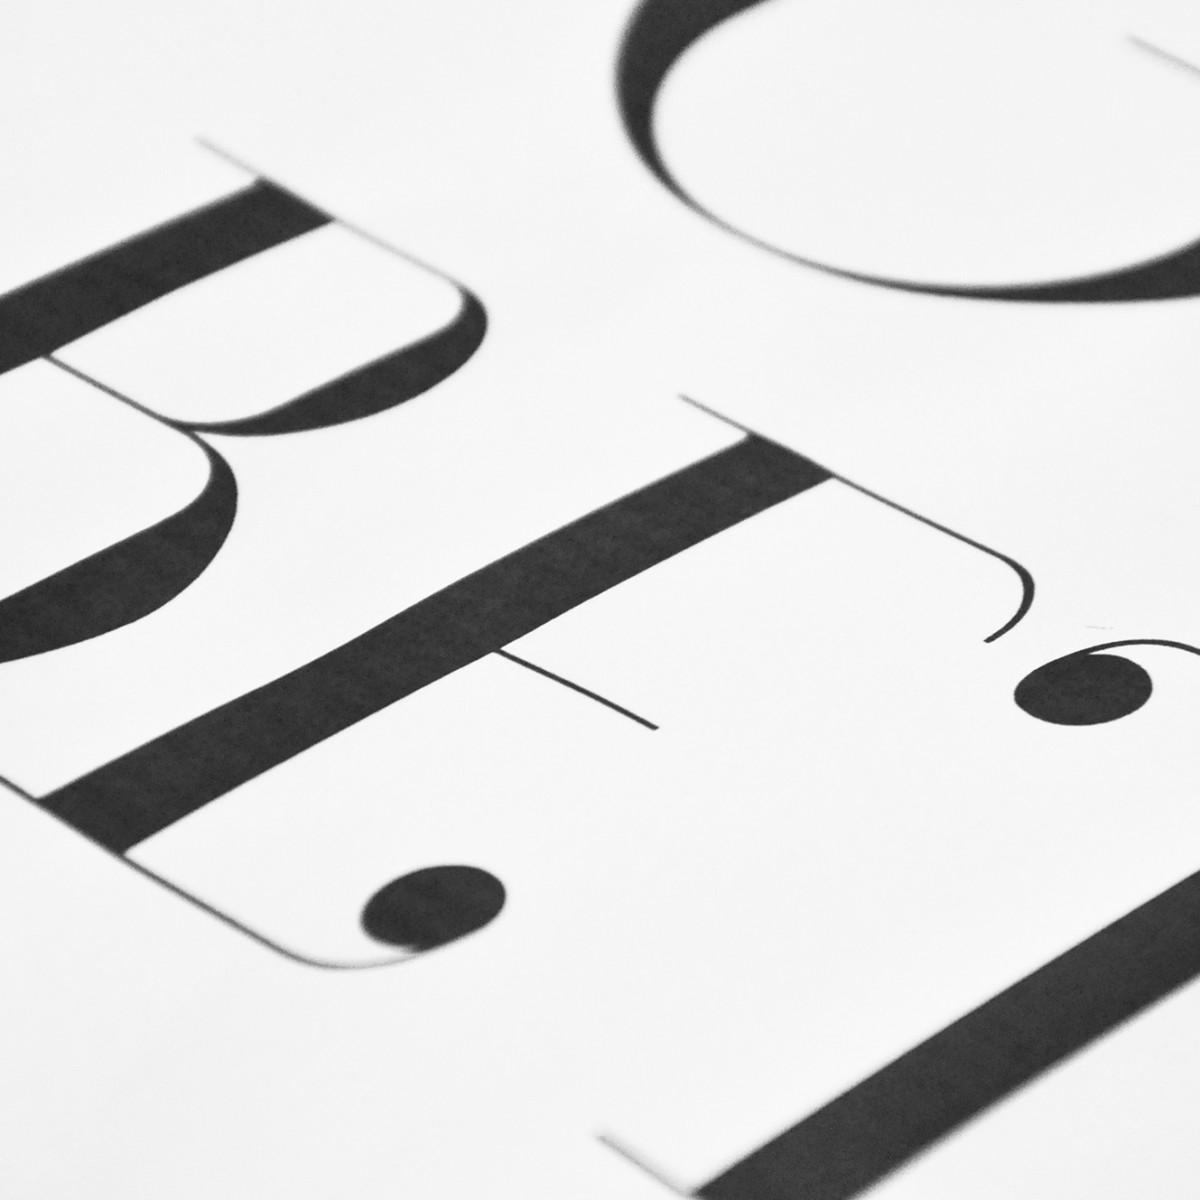 nahili POSTER / ARTPRINT "be&do good, it feels better" (DIN A3) schwarz weiß Grafik Typografie